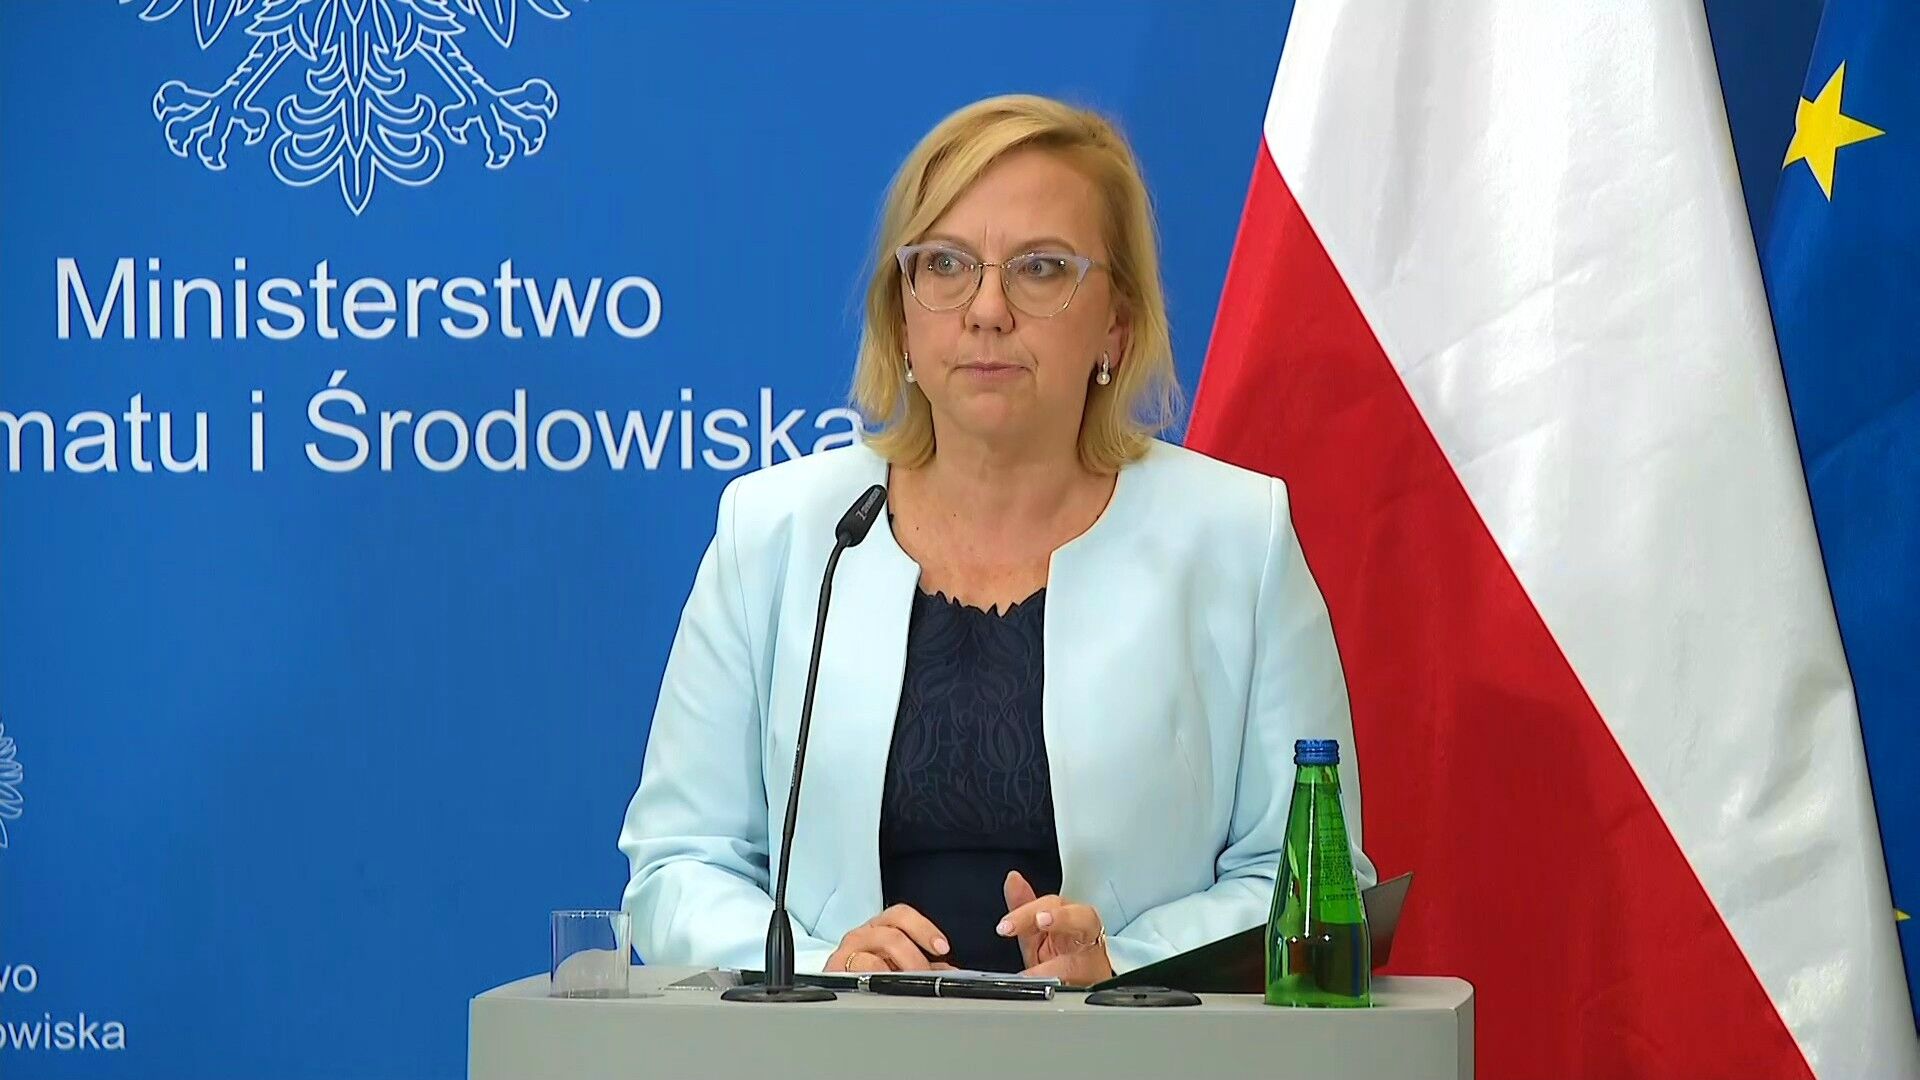 Nowa propozycja rządu. Minister Anna Moskwa o wsparciu dla kolejnych gospodarstw